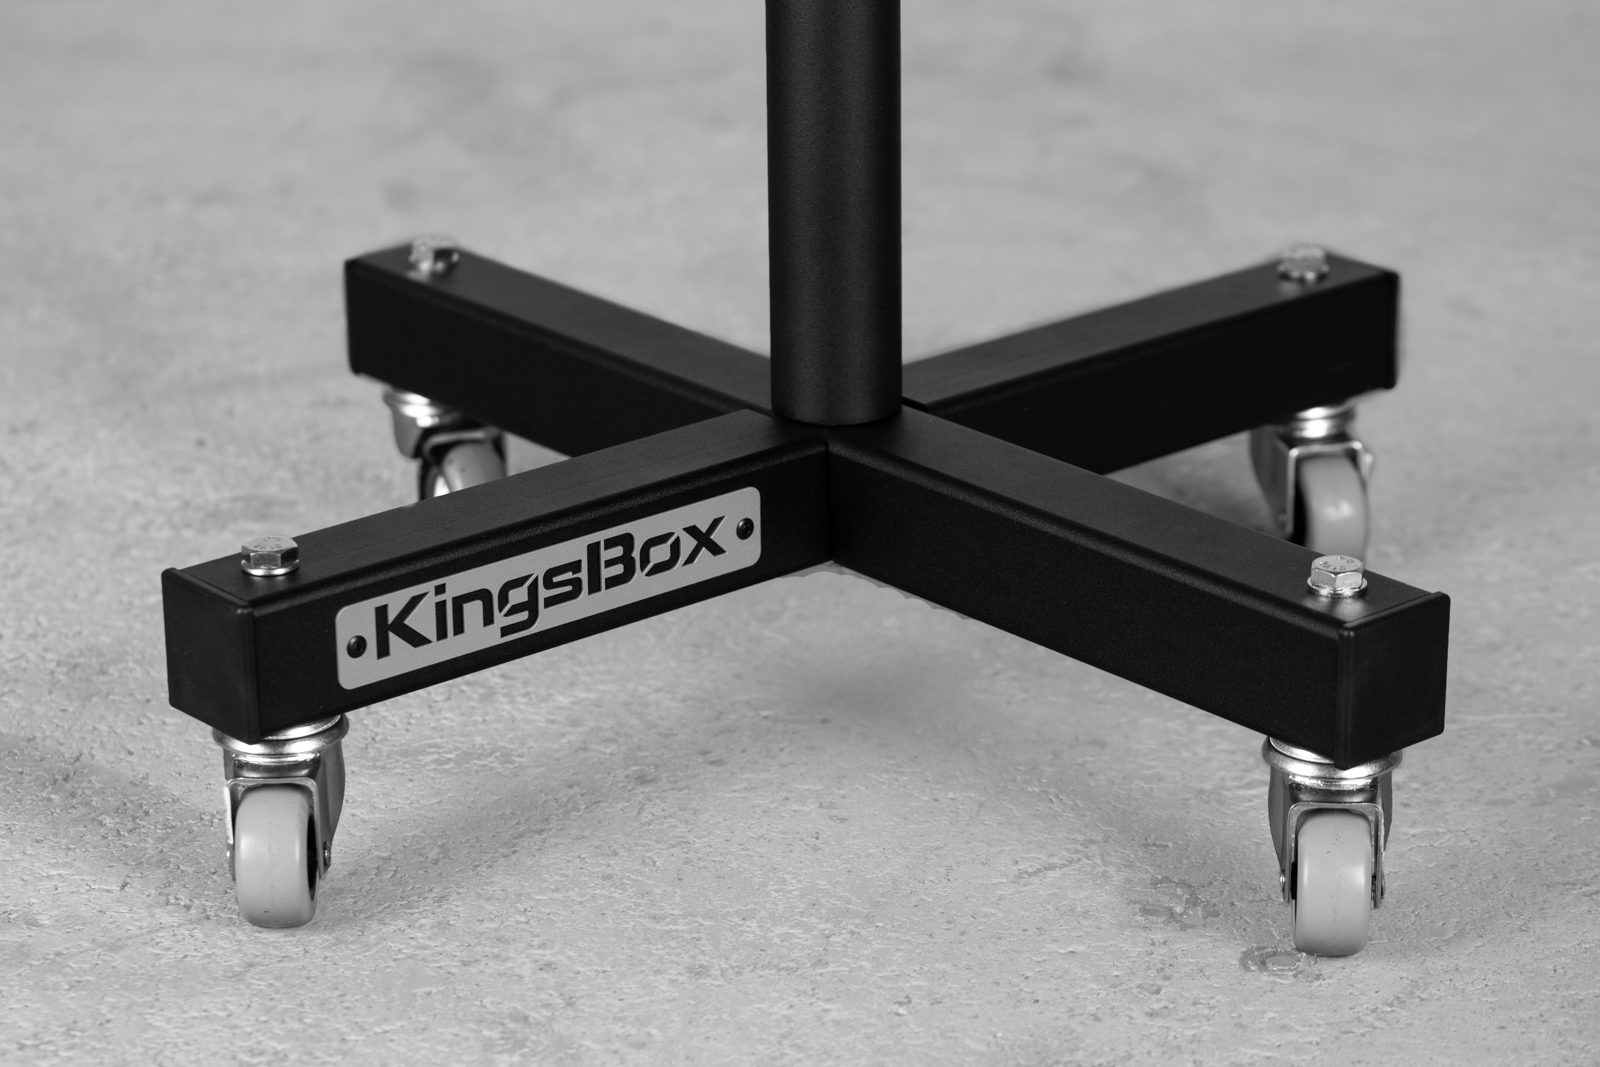 KingsBox Okvir postolja za utege Tower | KingsBox